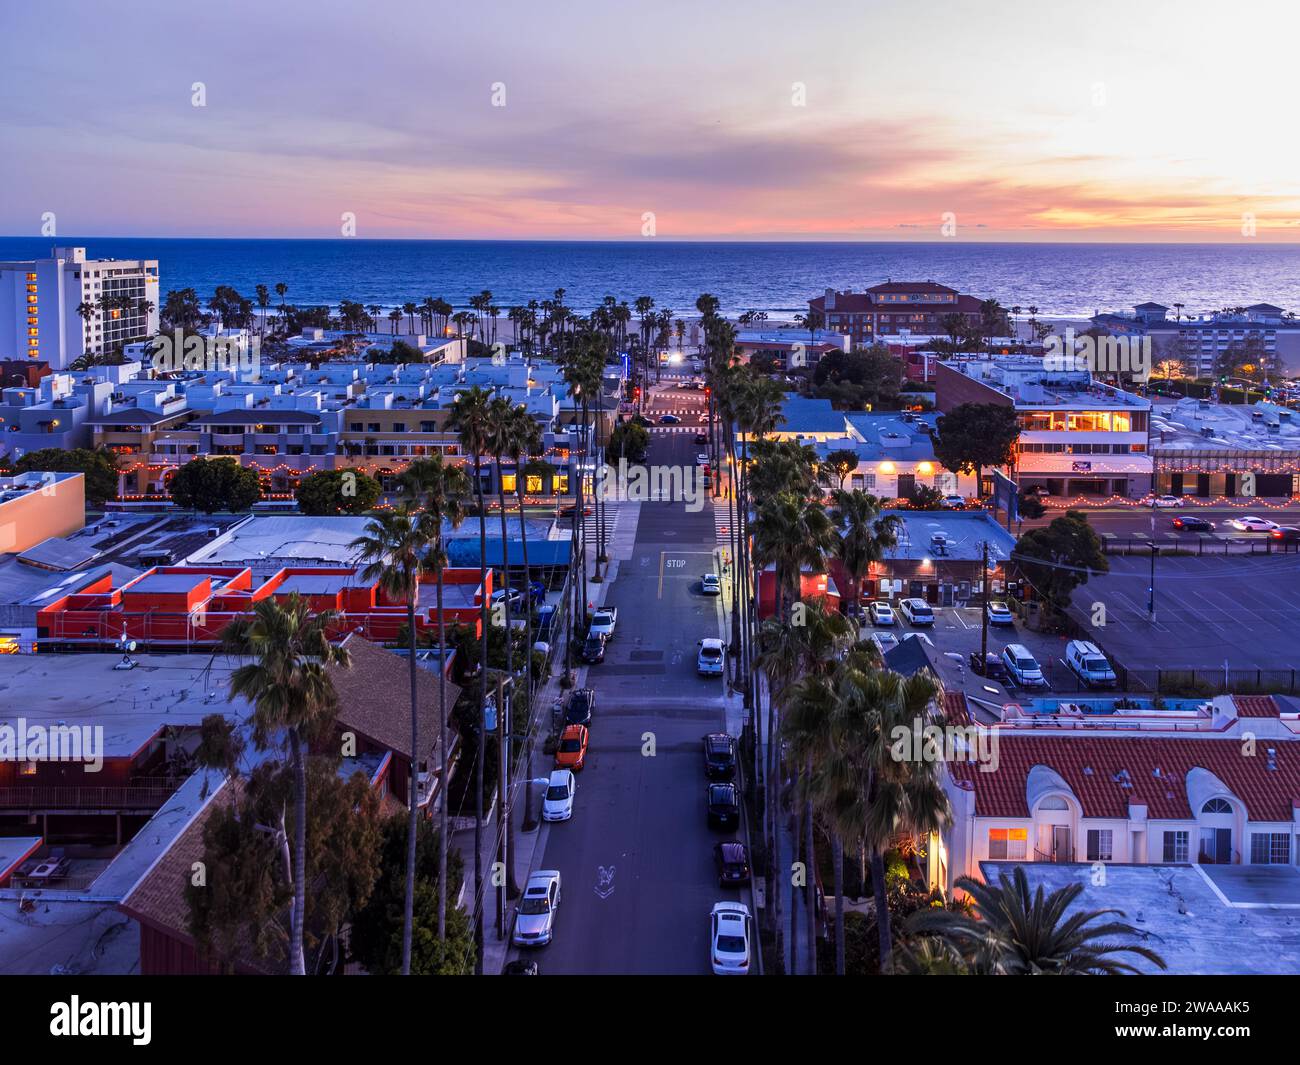 Vue aérienne de Santa Monica avec Bay Street allant vers l'océan au crépuscule, couleurs rose et lavande. Banque D'Images